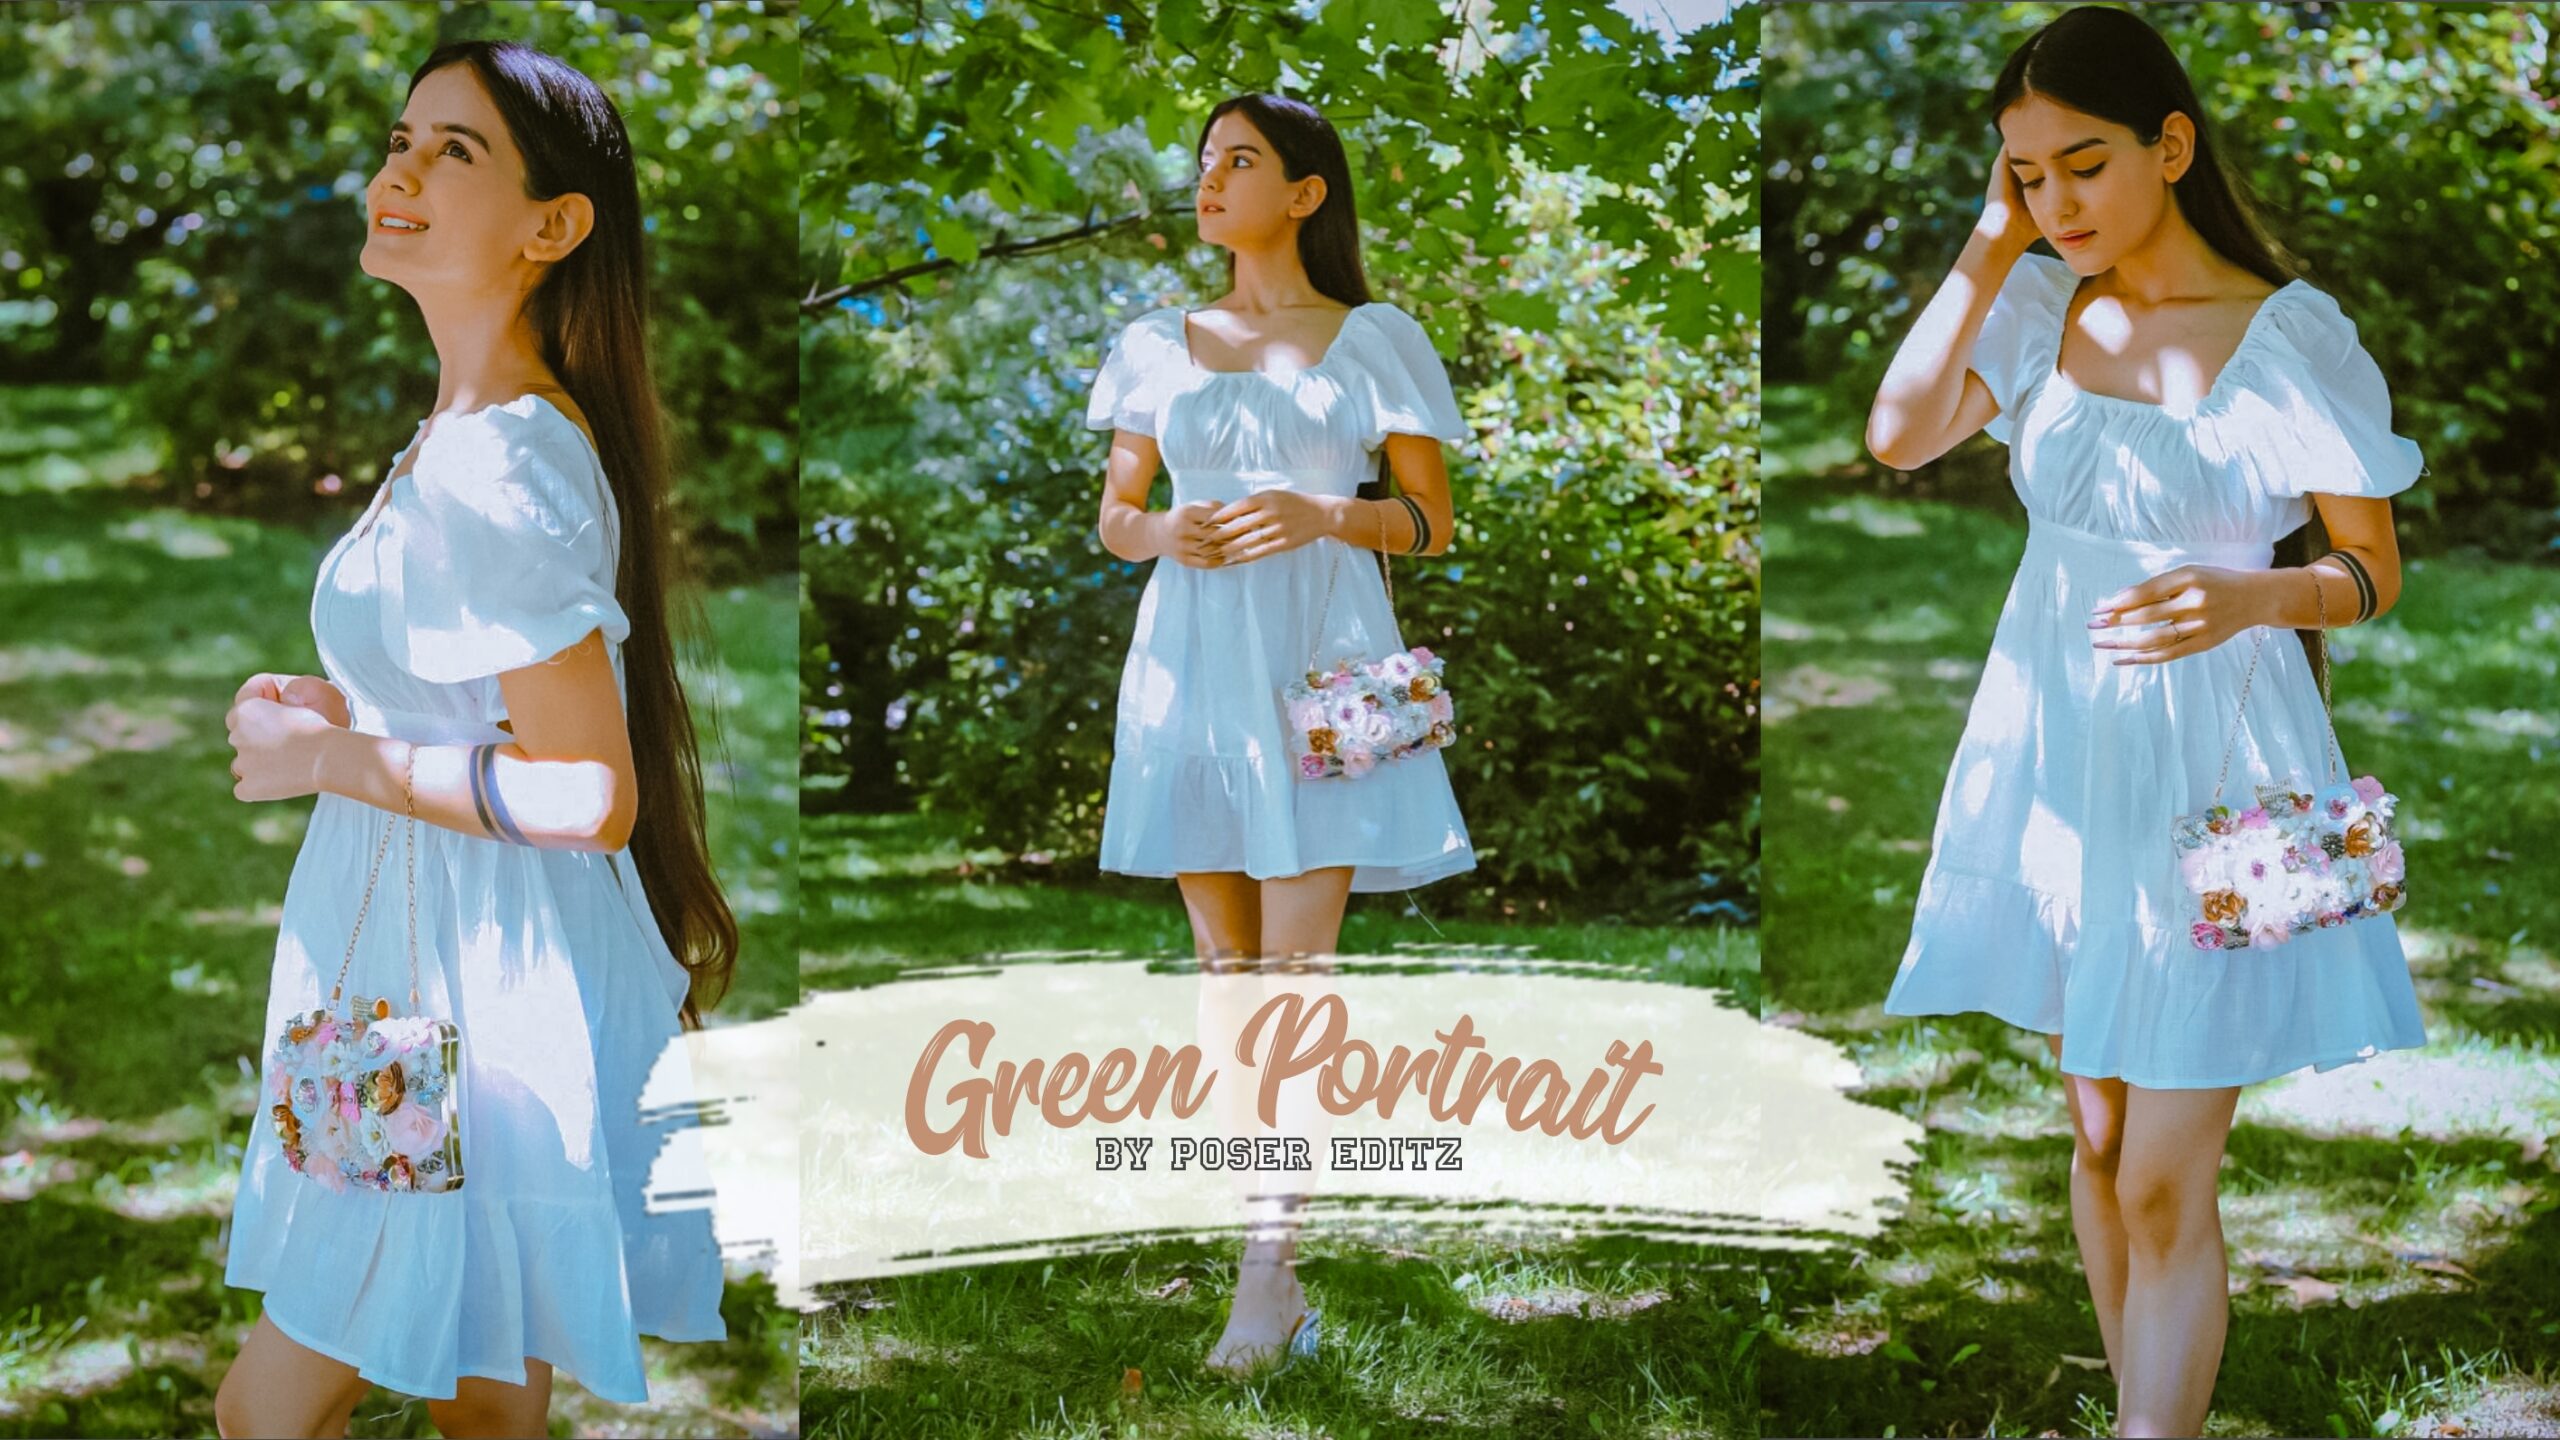 Green Portrait Lightroom Preset Download